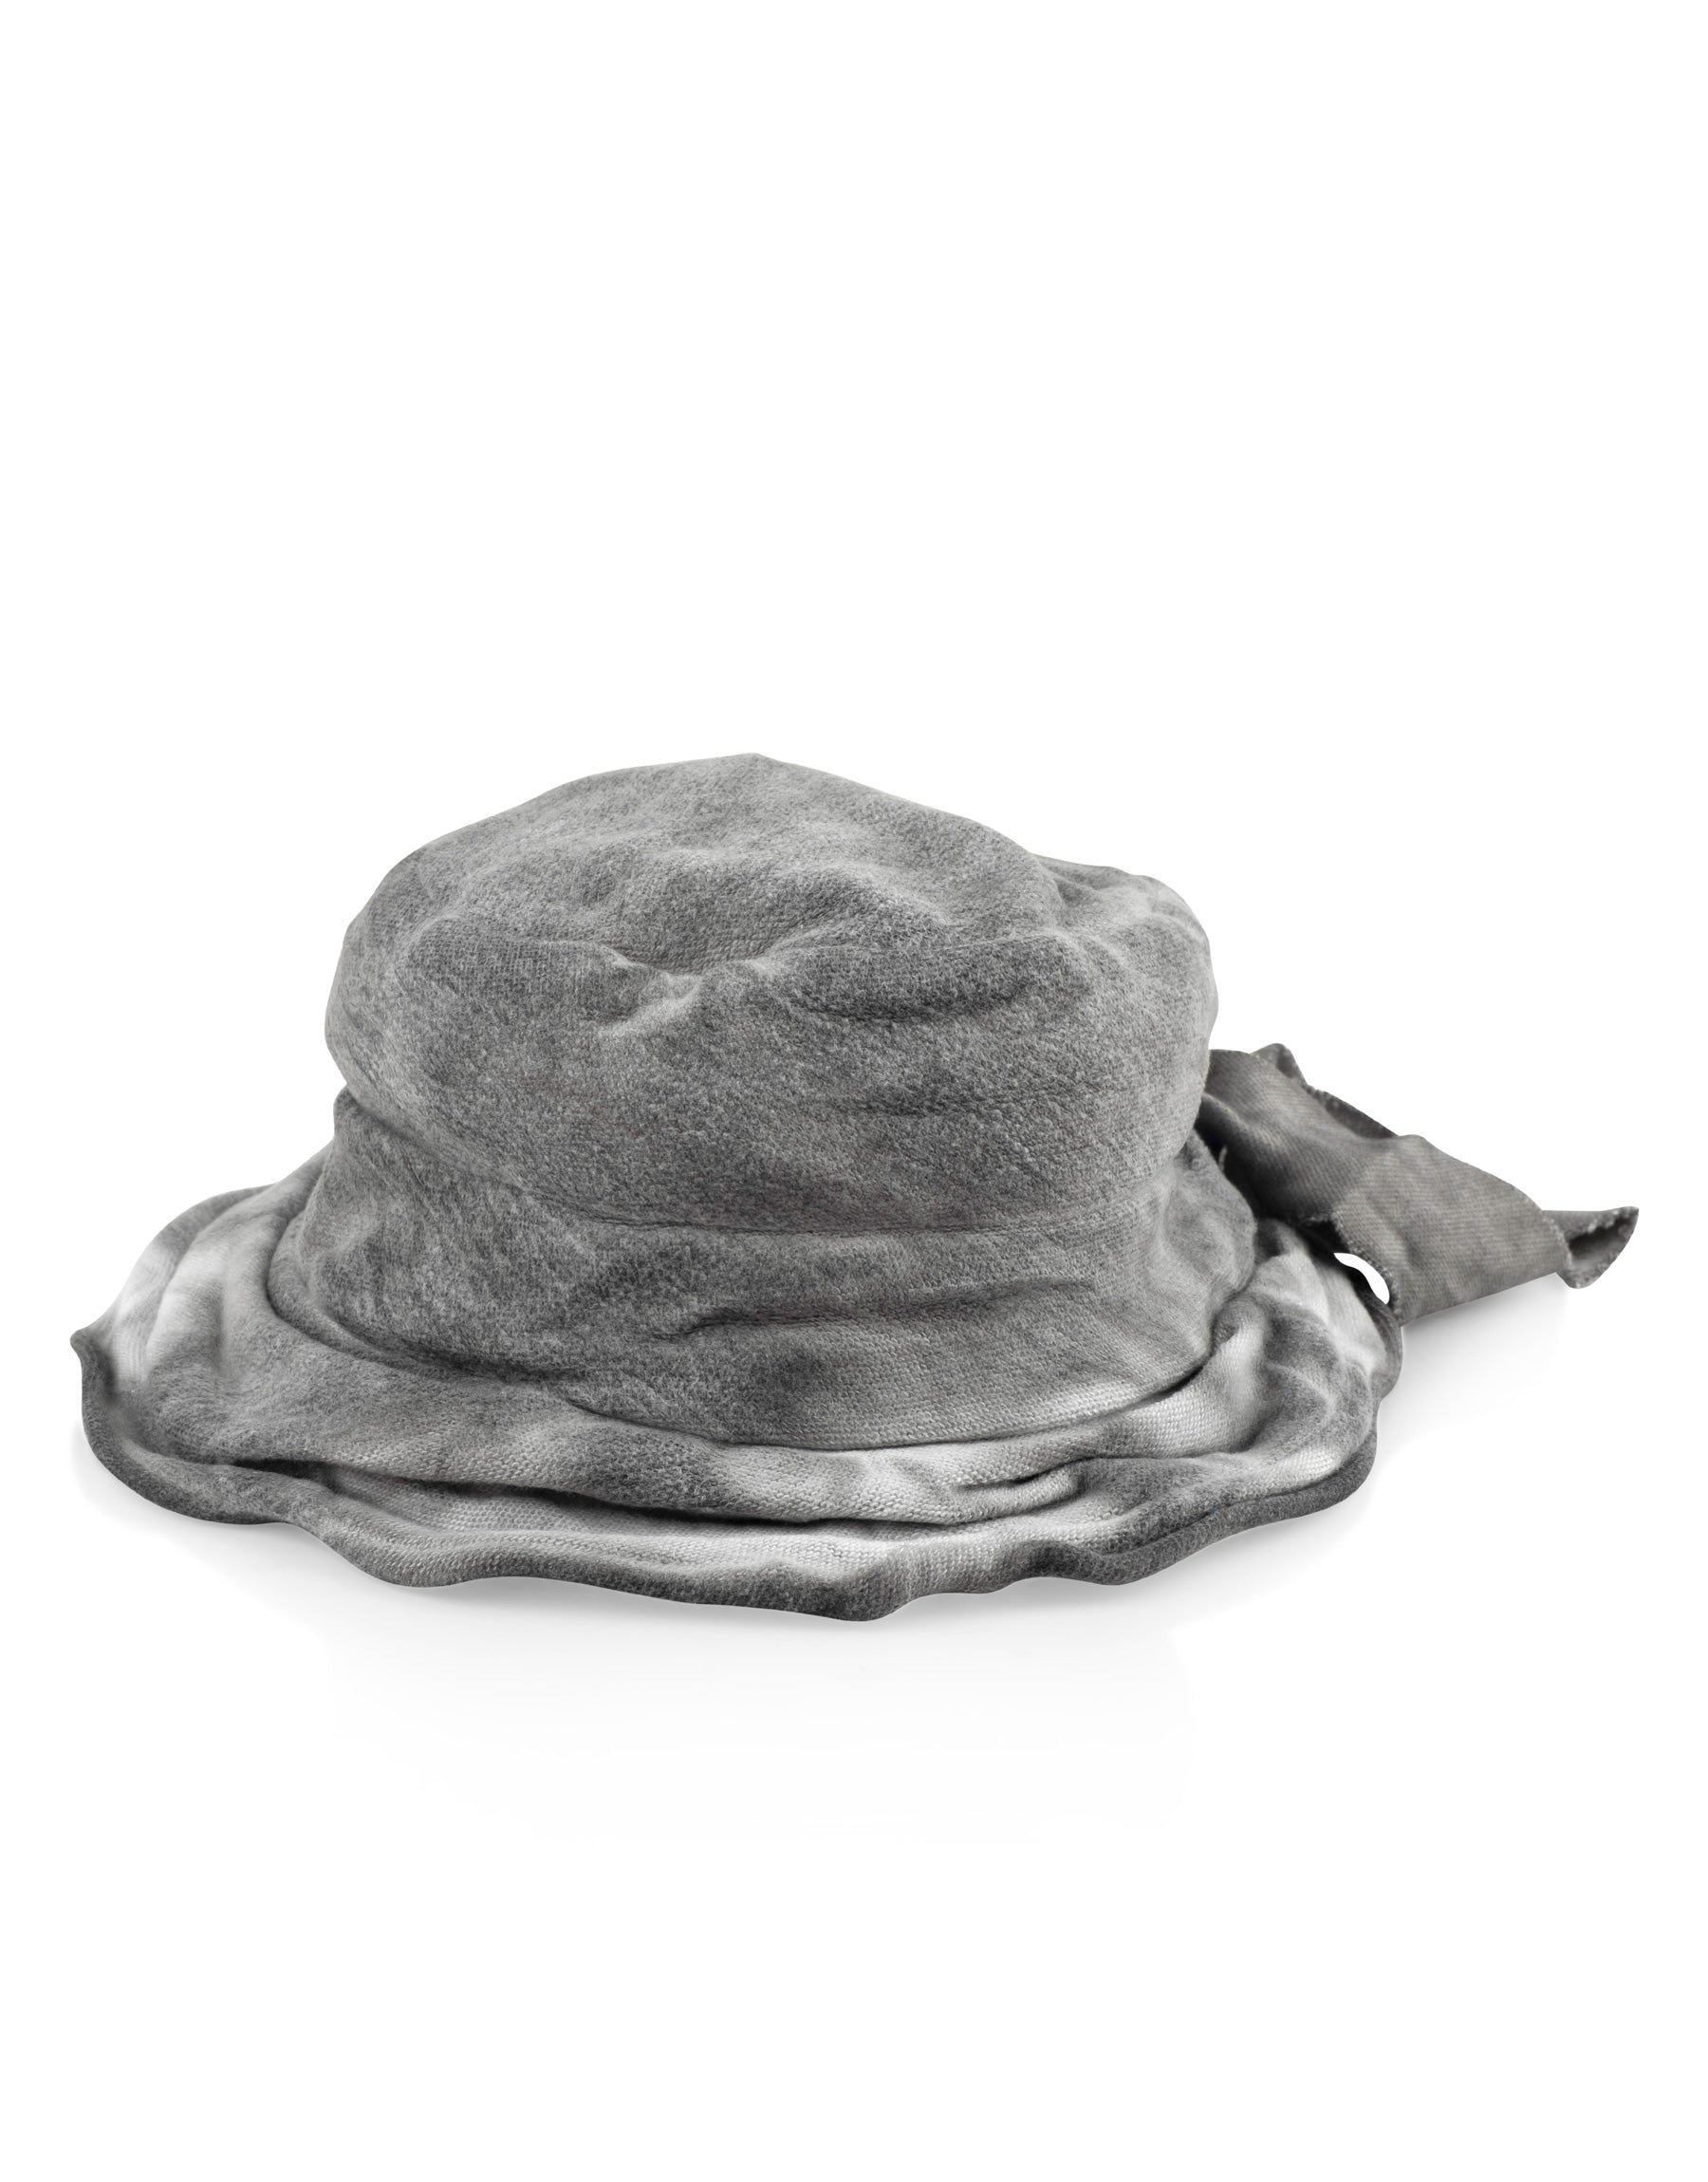 כובע הולי עם קשירה אפור בהיר ווש